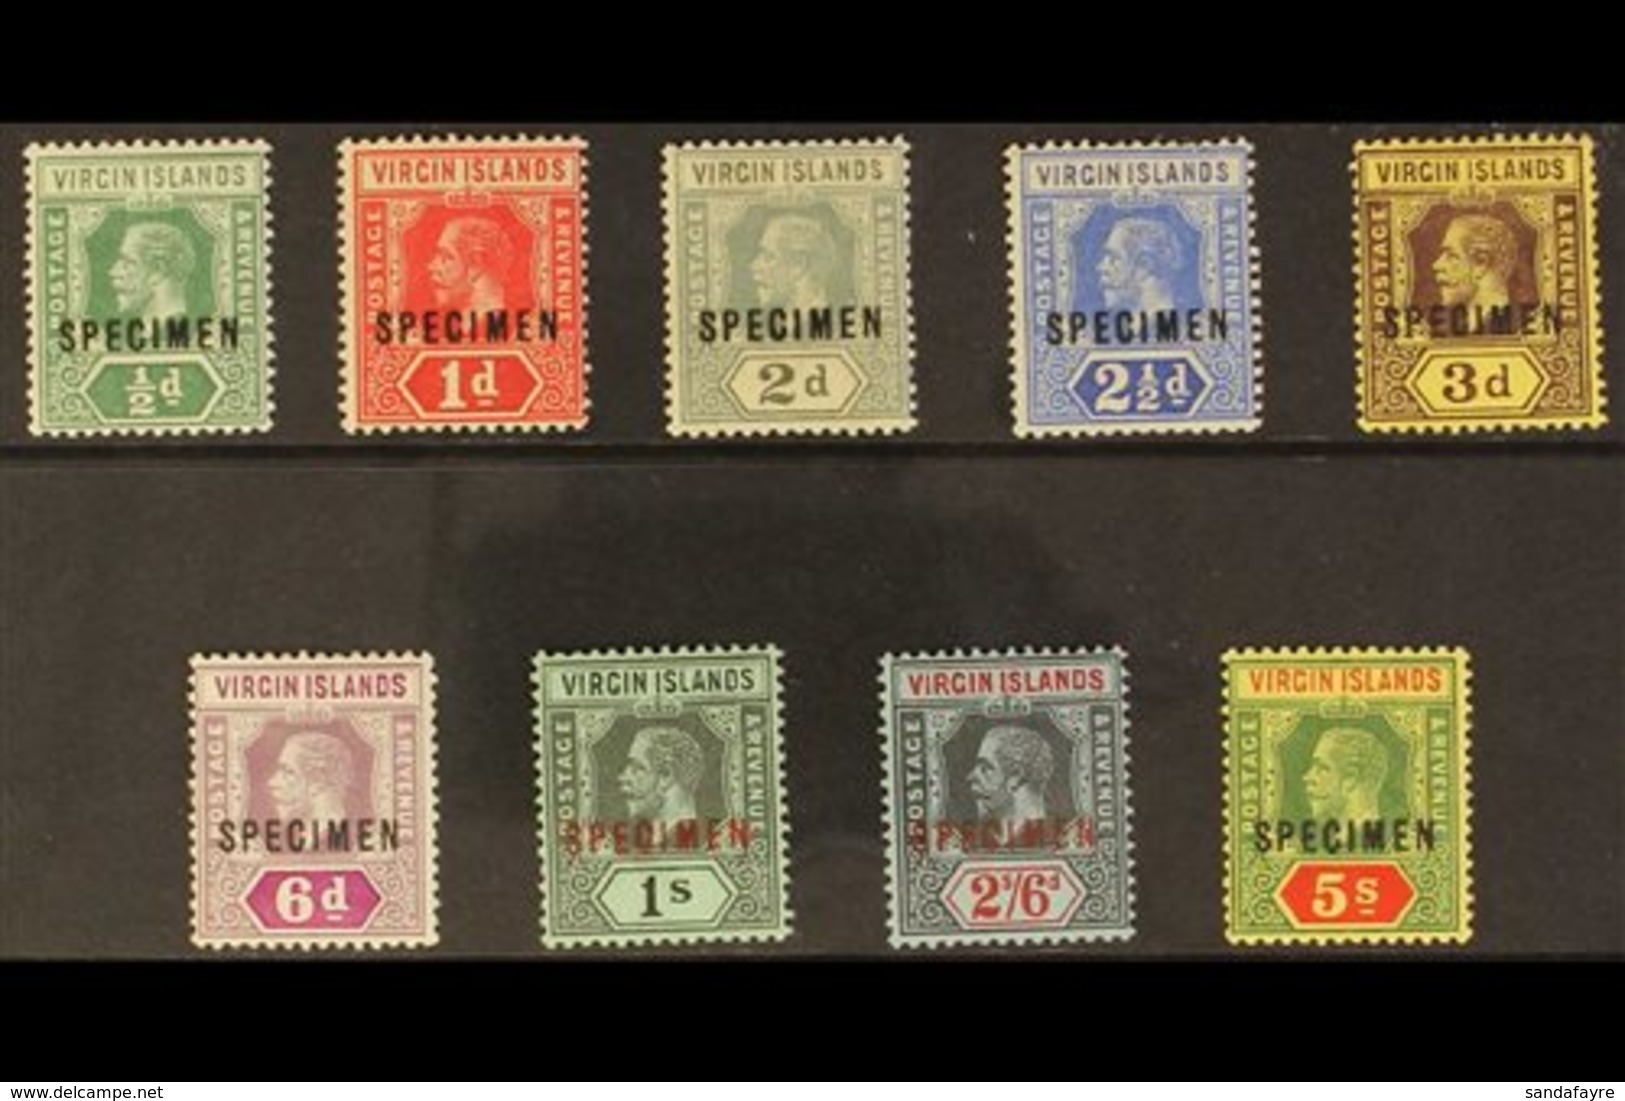 1913 - 19 Geo V Die I Set Complete, Overprinted "Specimen", SG 69s/77s, Very Fine Mint. (9 Stamps) For More Images, Plea - Britse Maagdeneilanden